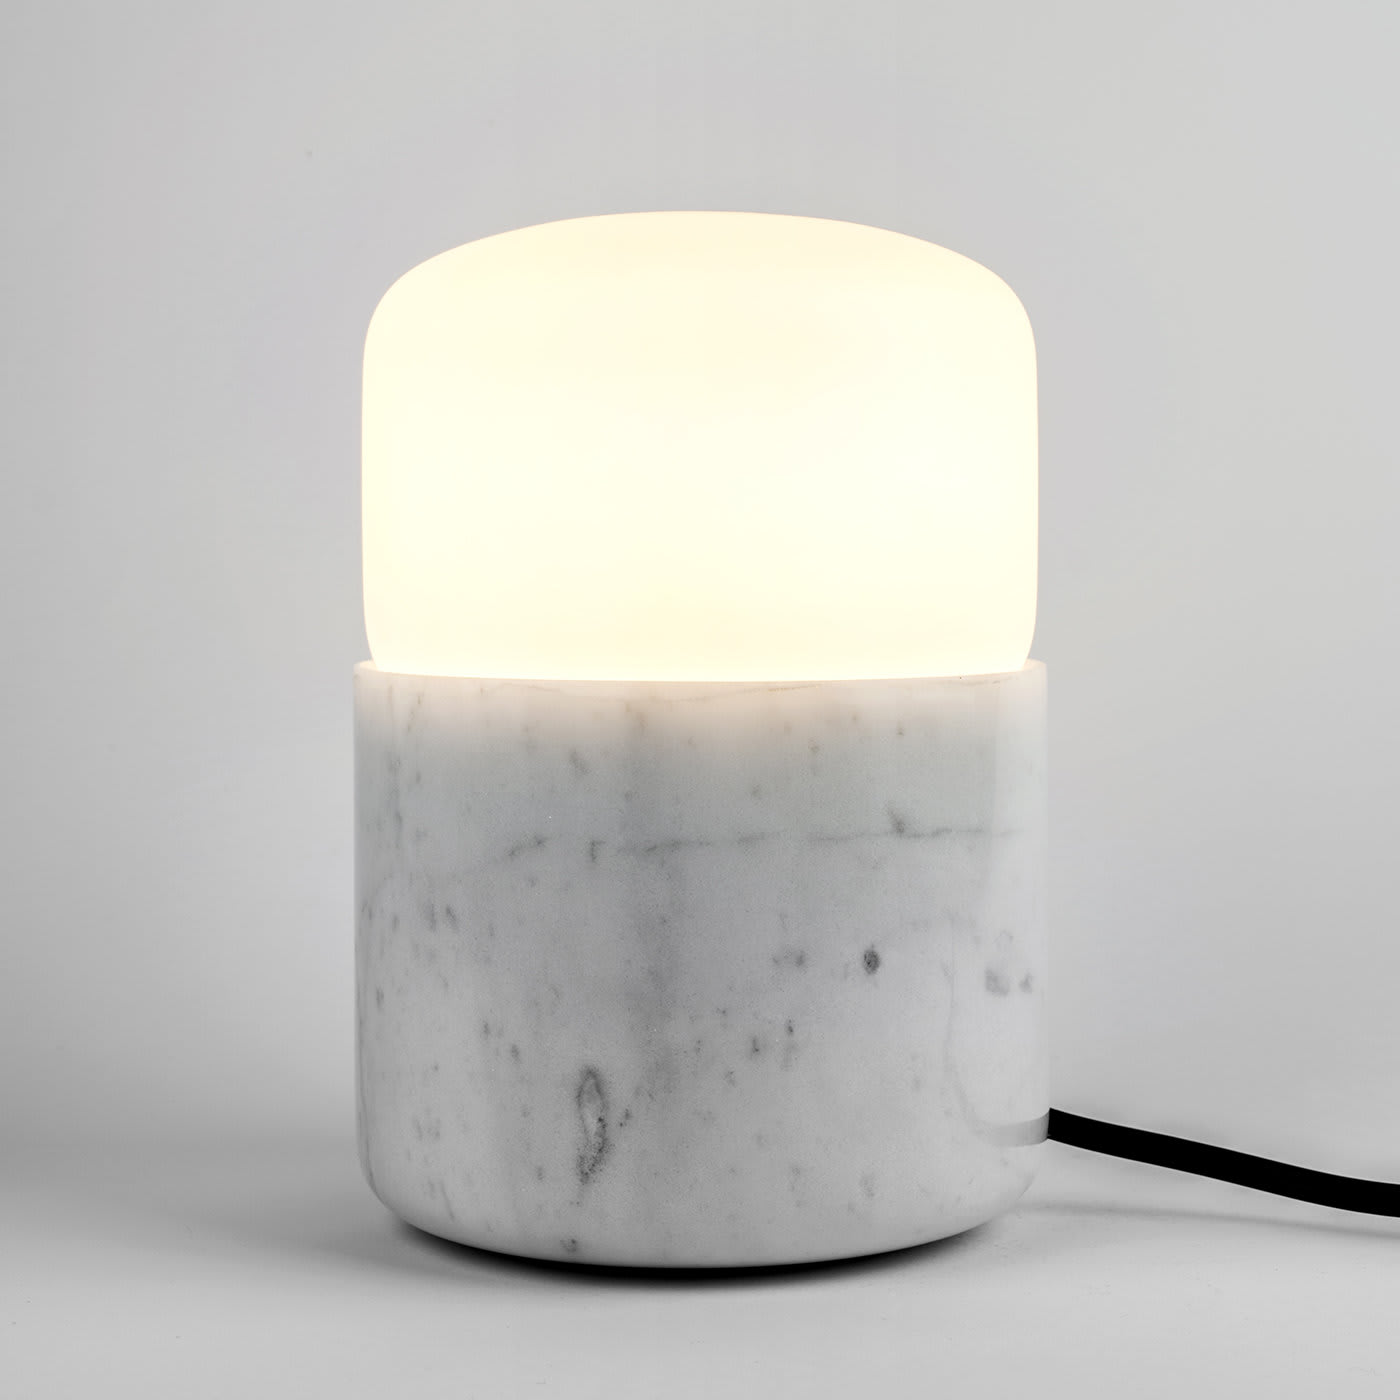 Silo Small White Table Lamp by Alalda Design - Interia